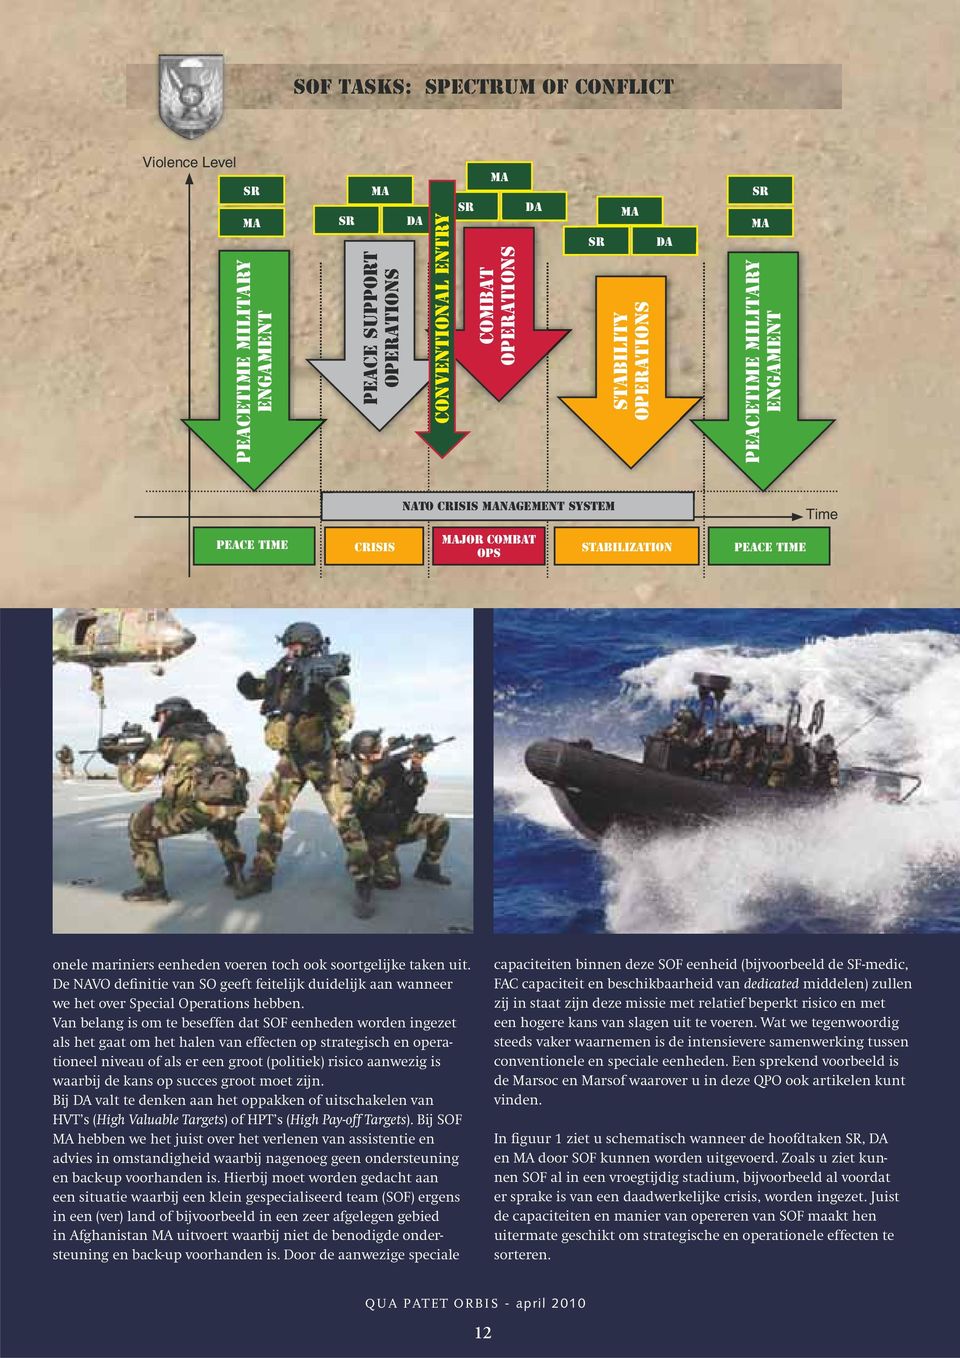 De NAVO definitie van SO geeft feitelijk duidelijk aan wanneer we het over Special Operations hebben.